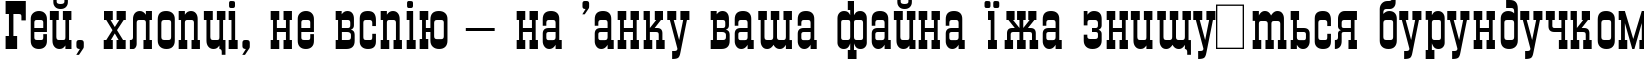 Пример написания шрифтом Grad Plain:001.001 текста на украинском